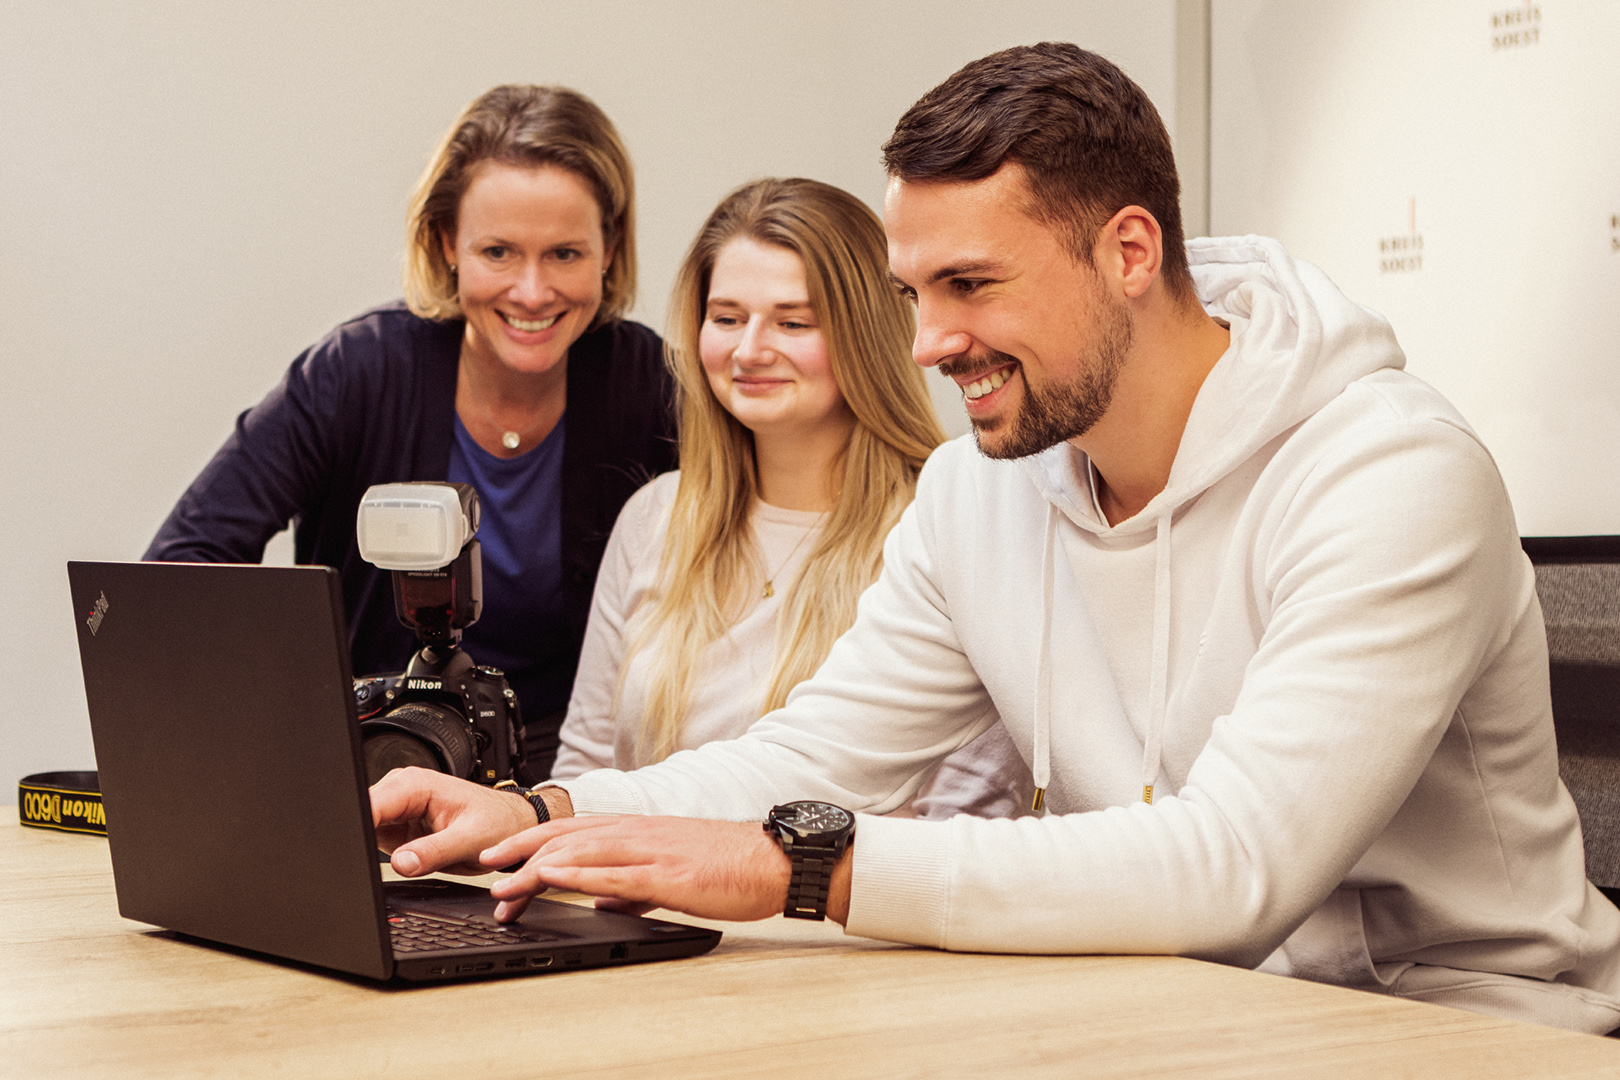 Eine Person schaut lächelnd auf einen Laptop. Zwei weitere Personen schauen ebenfalls auf den Laptop. Foto: Thomas Grimm